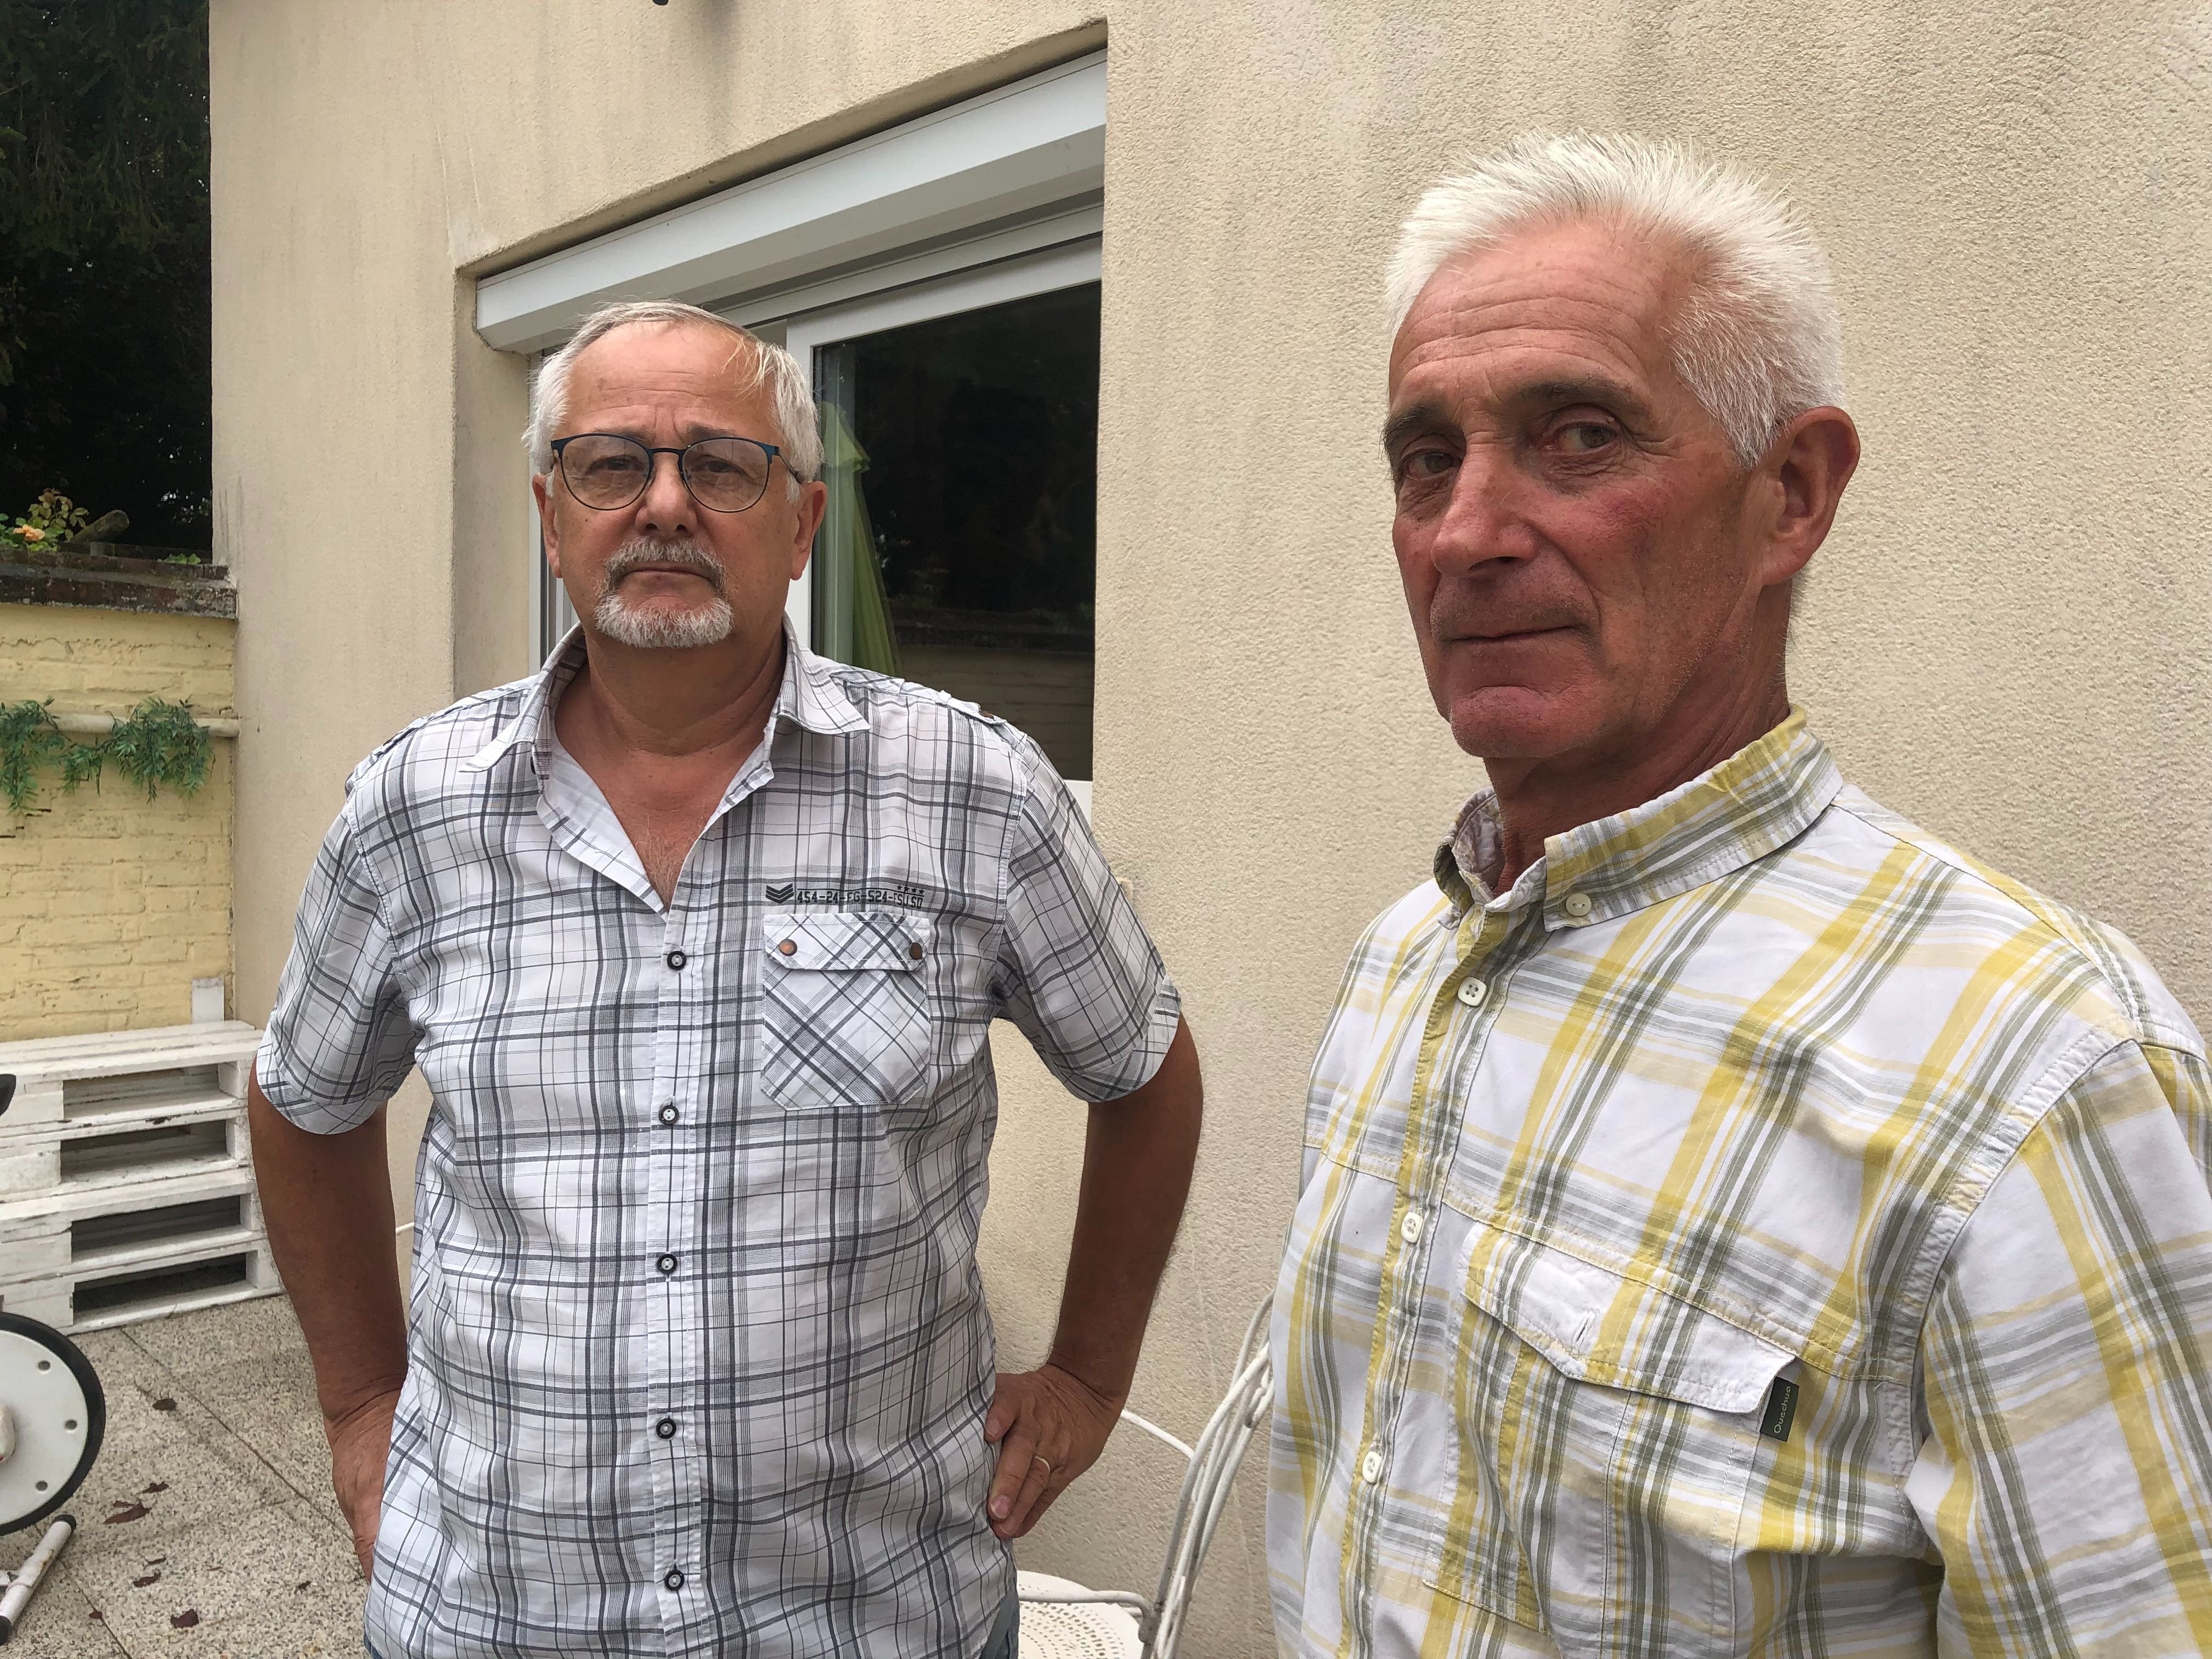 Maisoncelle-Tuilerie (Oise), le jeudi 14 septembre. André Vigne, à gauche, est propriétaire d'une maison concernée par les fissures. Le maire du village, Gérard Levoir, l'aide dans les démarches. LP/Florent Heib